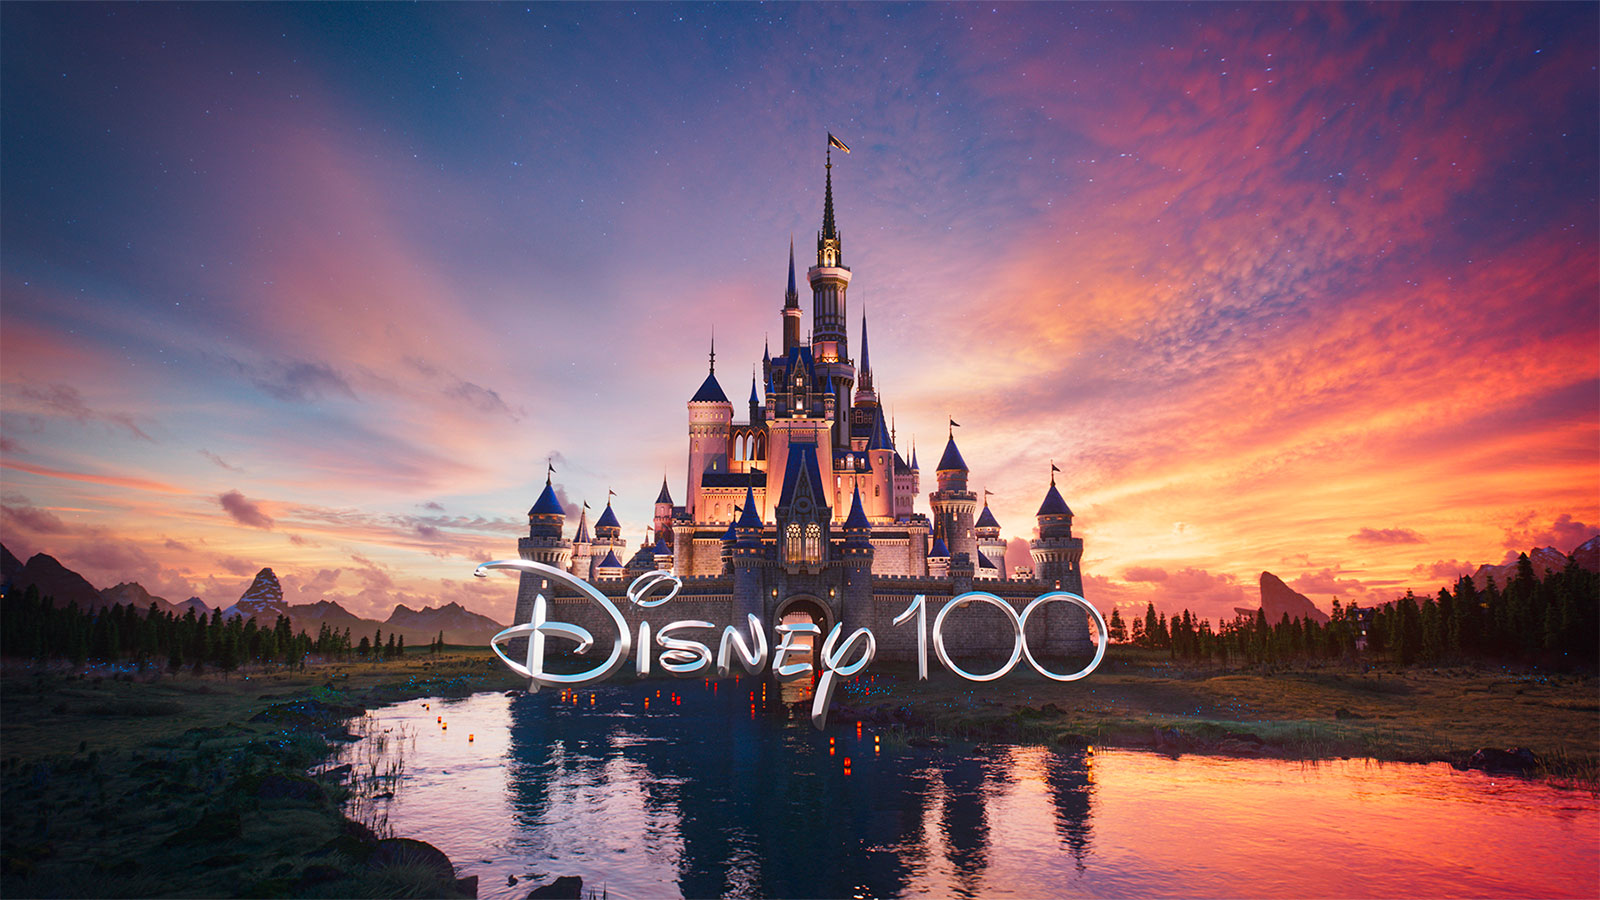 O Centenário Da Disney: Uma Celebração De 100 Anos De Histórias E Inovações